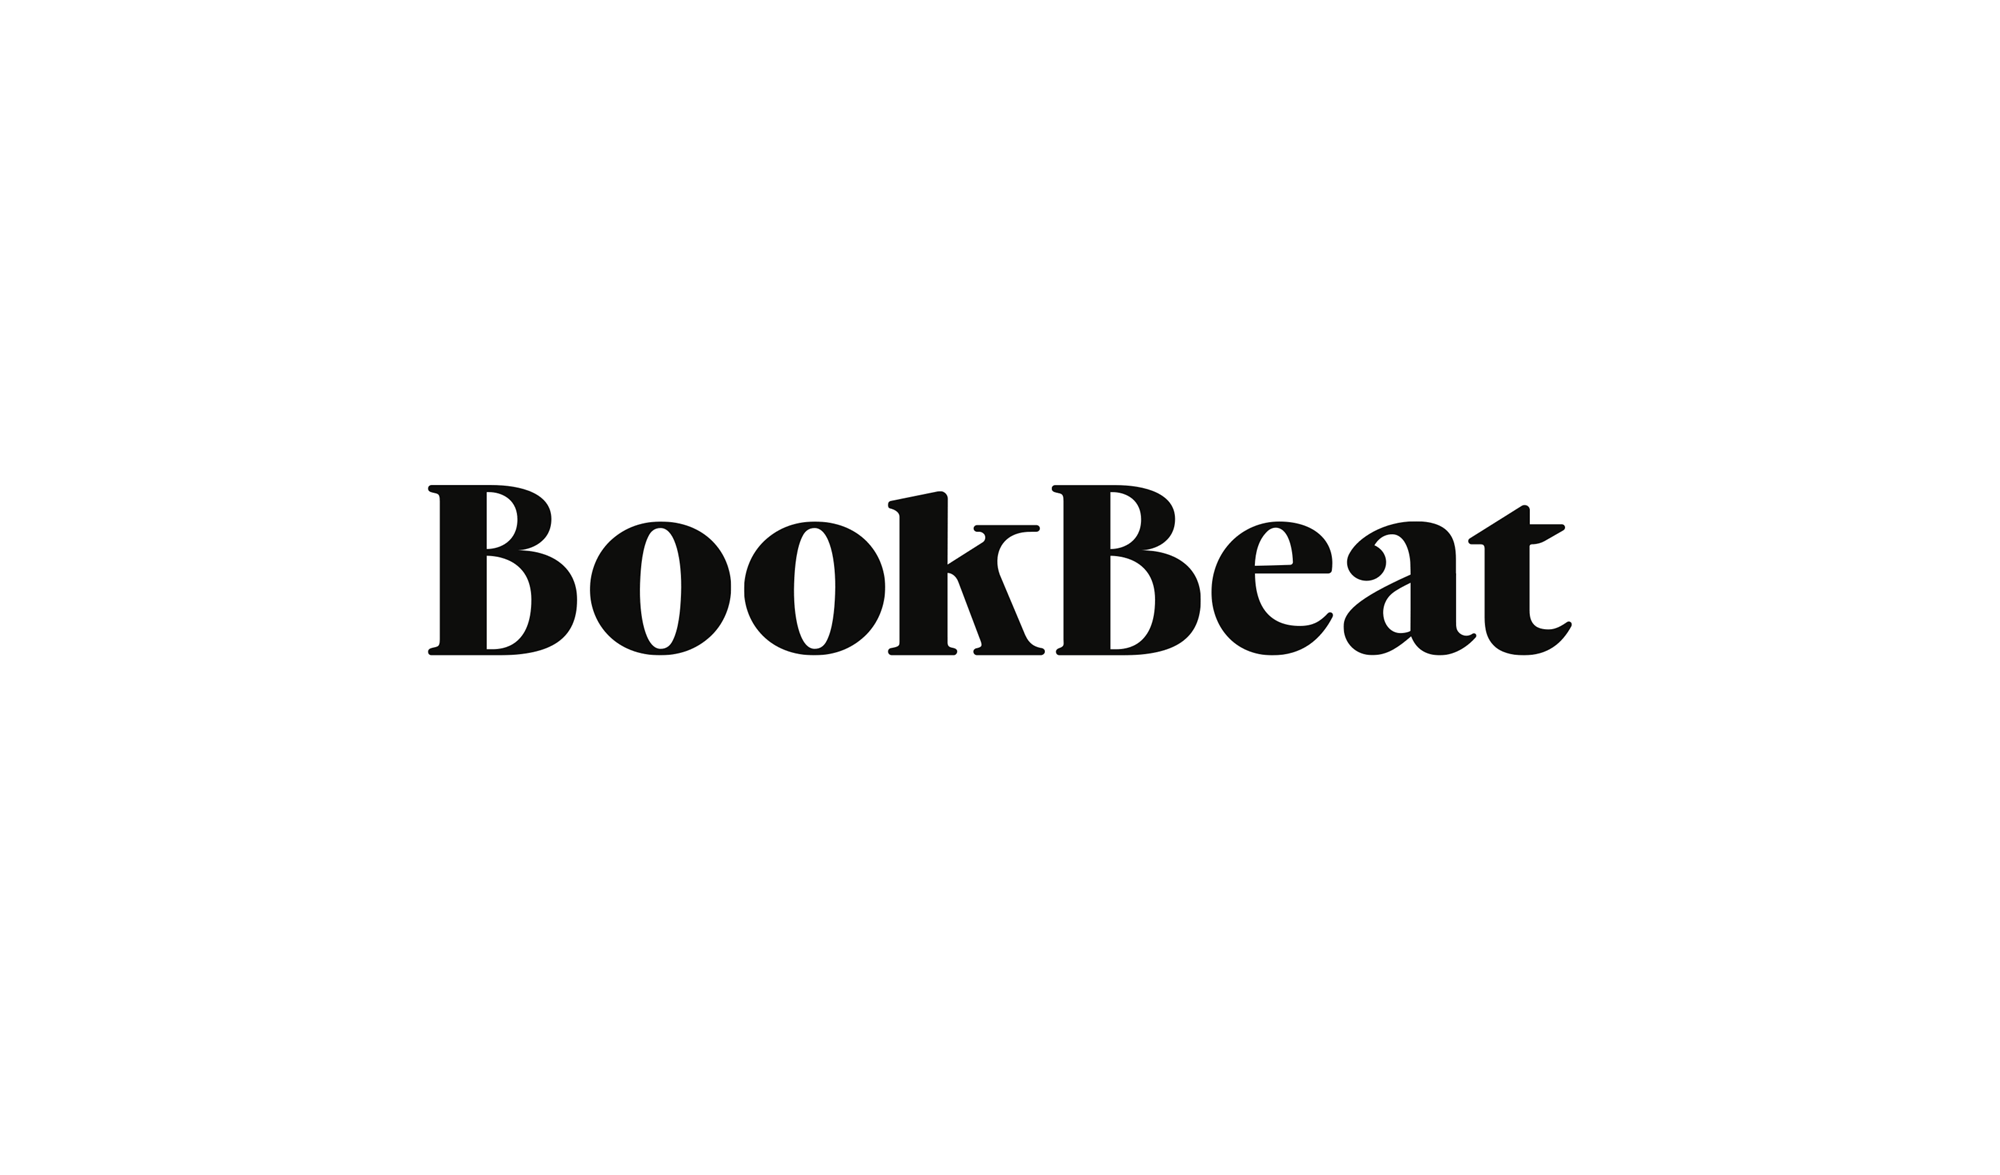 BookBeat kostenlos testen